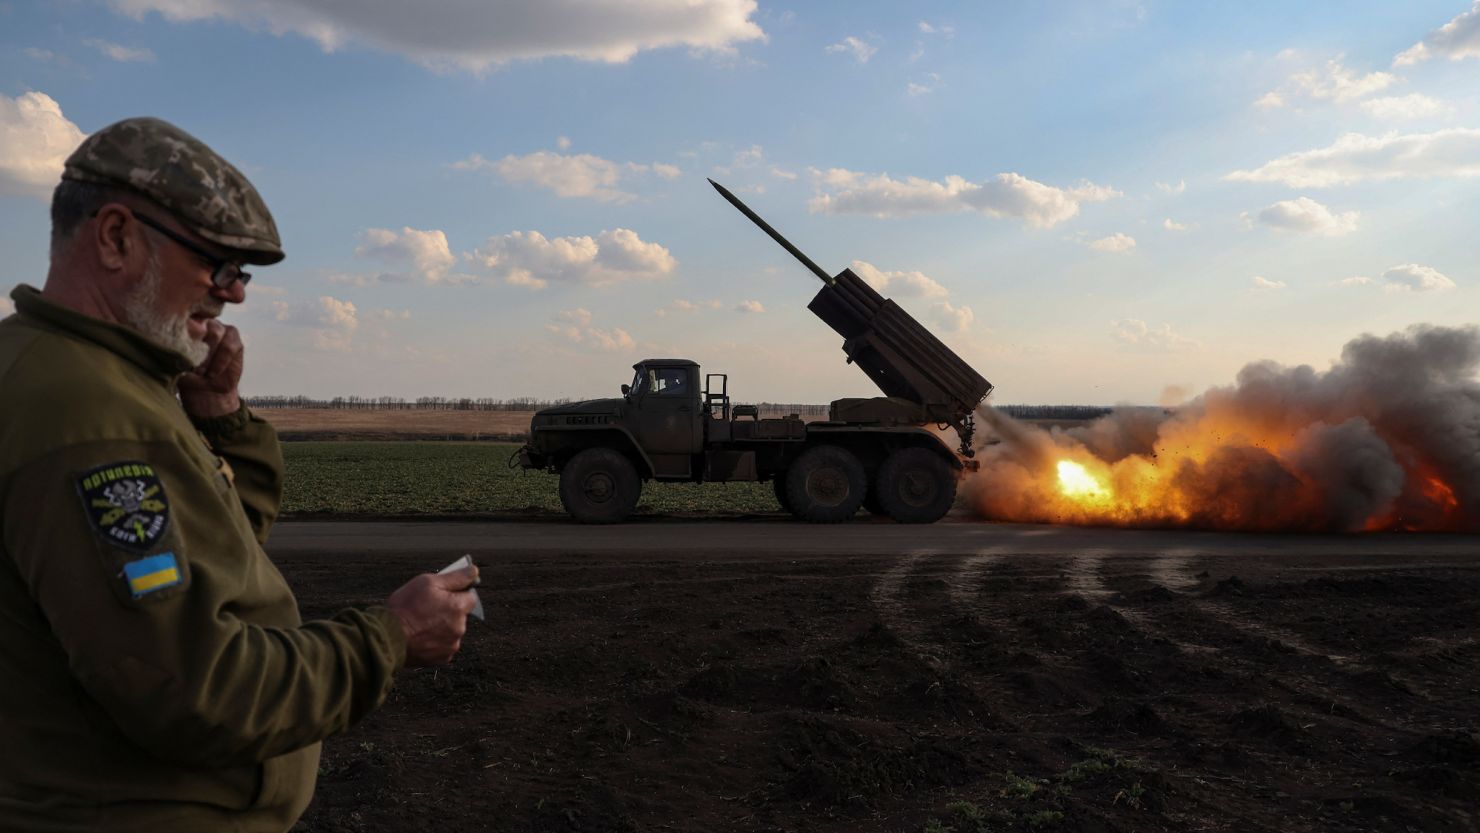 Ukrainian service members fire a BM-21 Grad multiple launch rocket system (MLRS) towards the Russian troops near a front line in the Donetsk region of Ukraine on March 27.